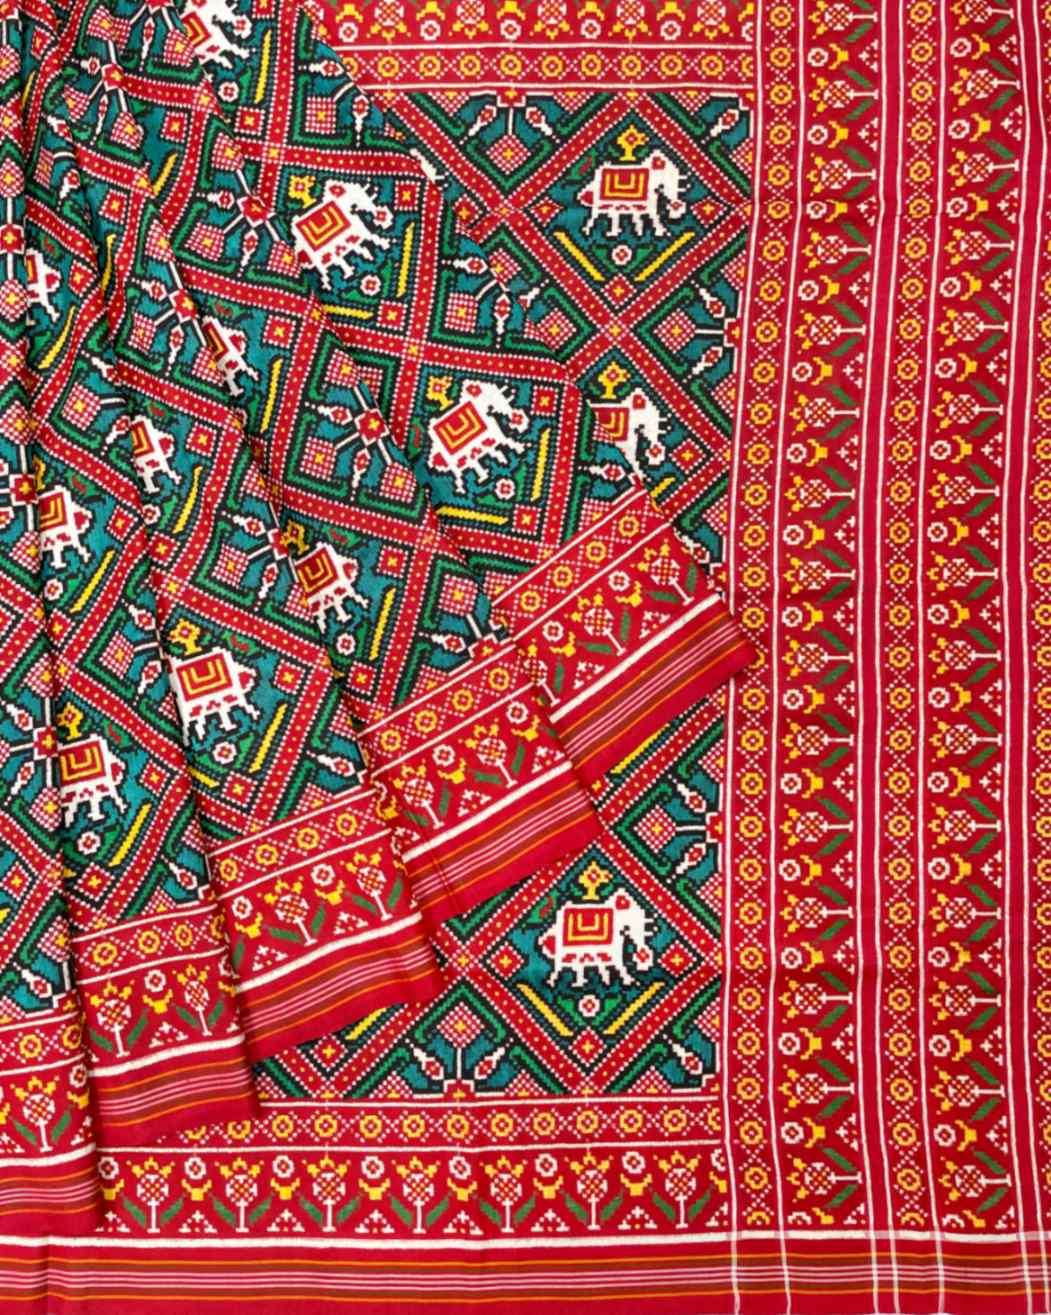 Red & Turquoise Narikunj Designer Patola Saree